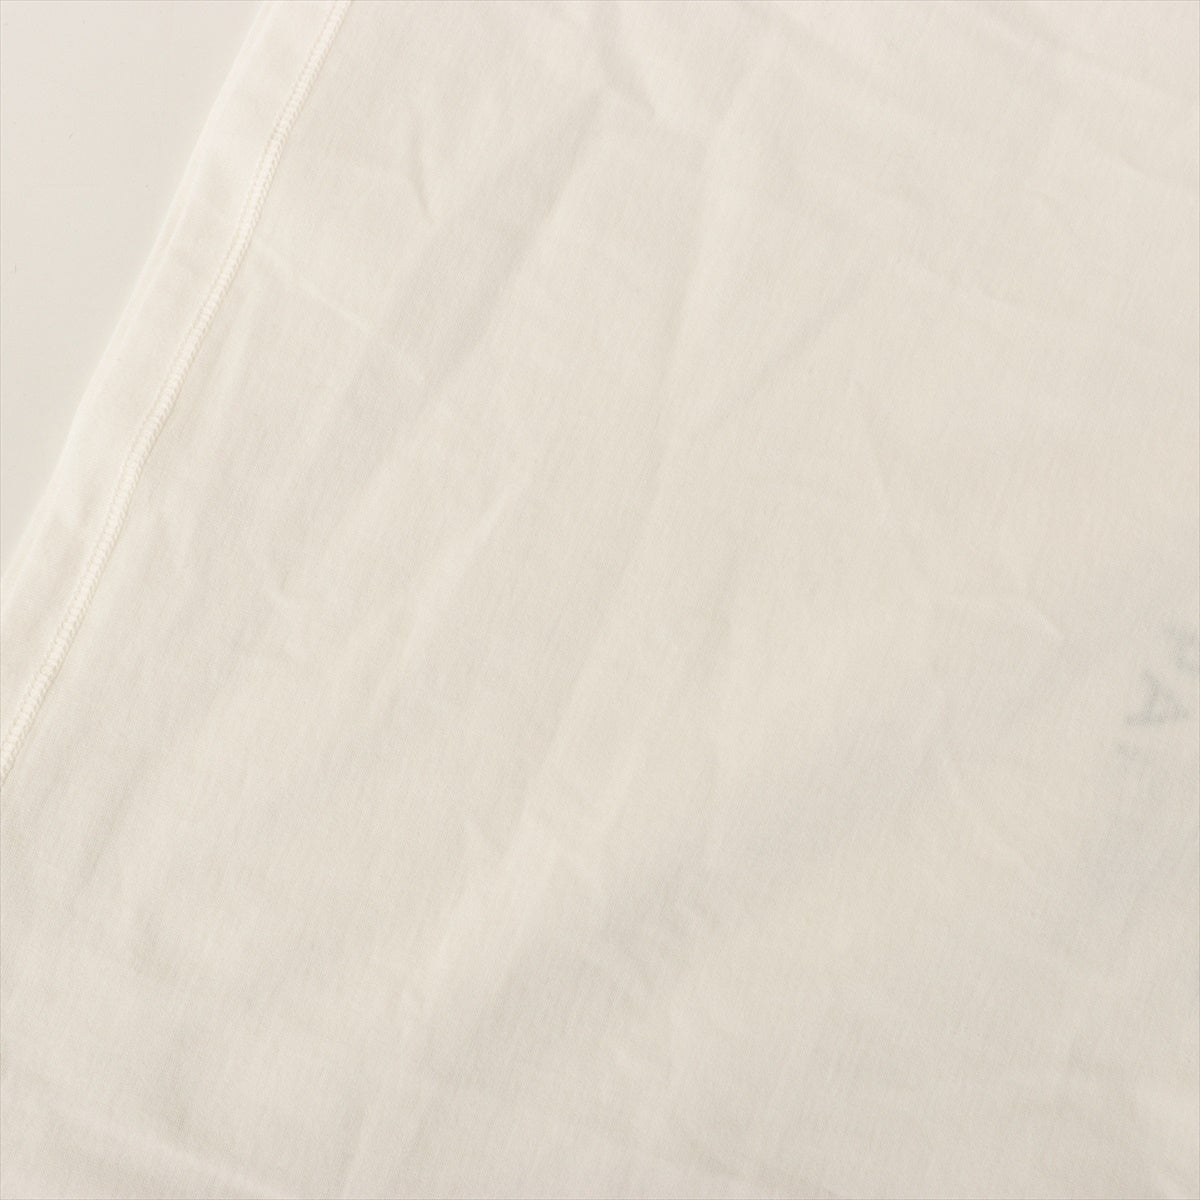 セリーヌ トリオンフ コットン Tシャツ XS レディース ホワイト  2X872671Q ロゴ